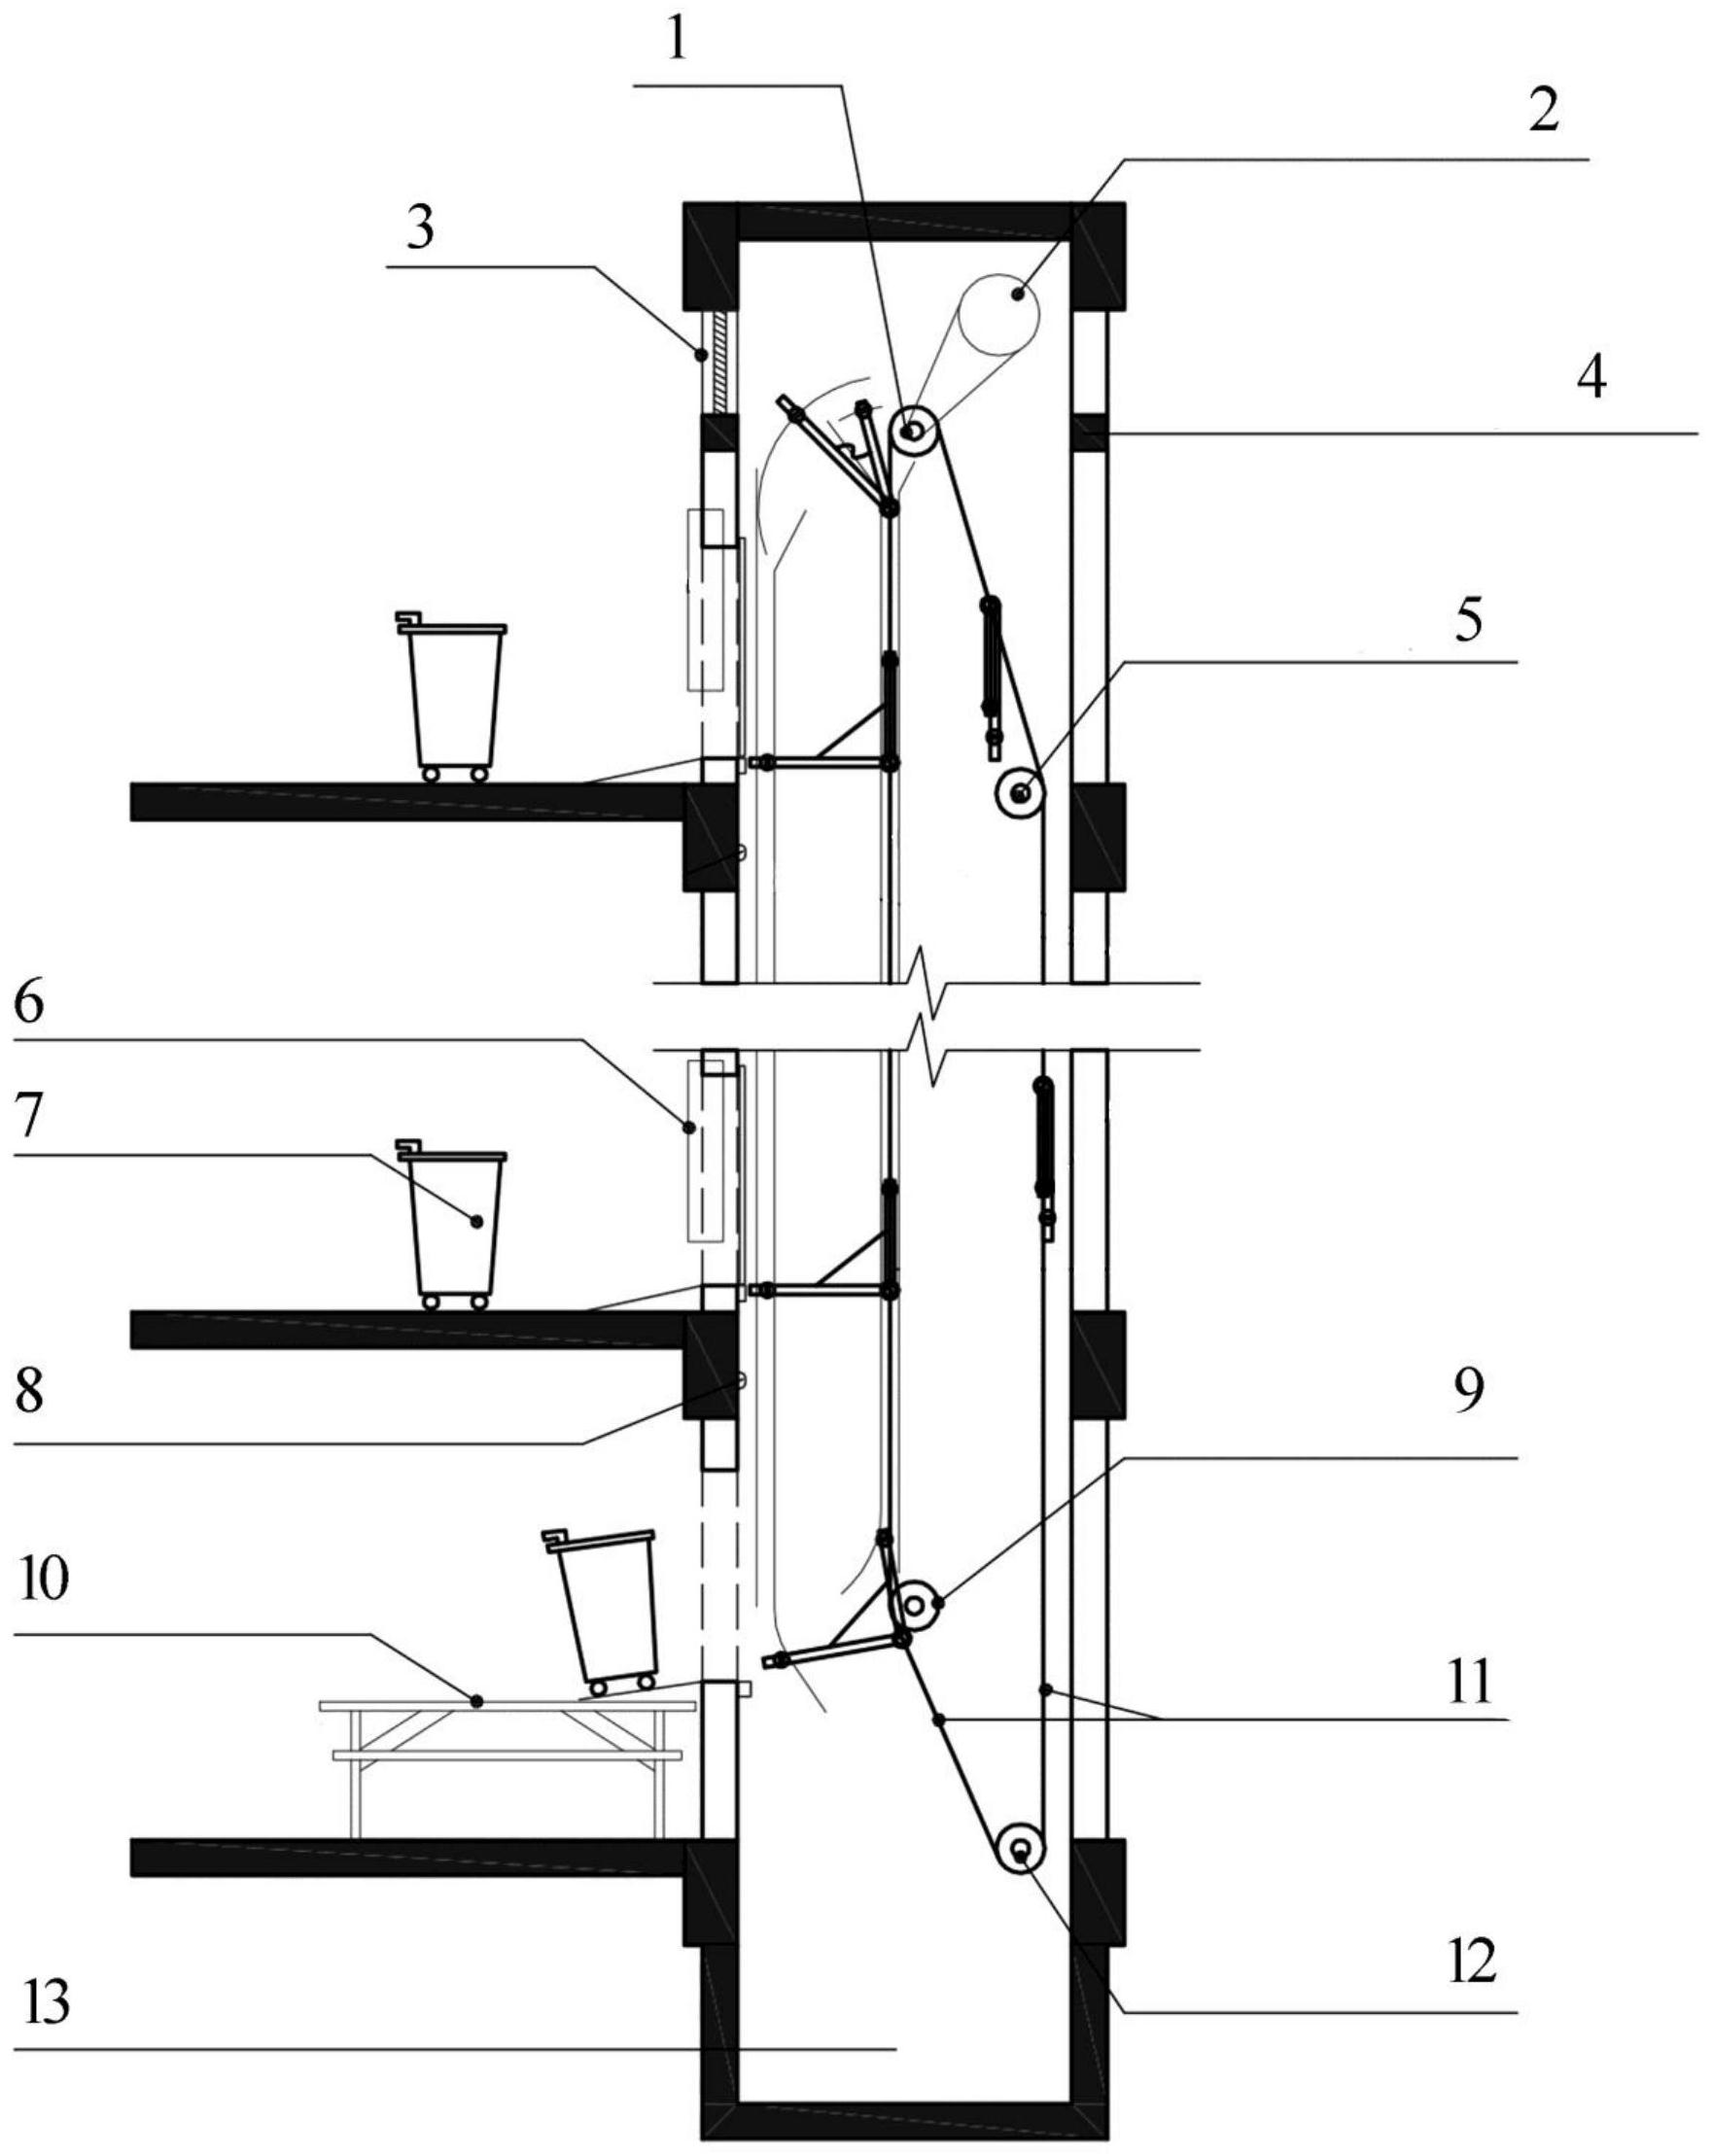 包括杂物梯通道,牵引部和轿厢部,轿厢部安装在所述牵引部上,杂物梯